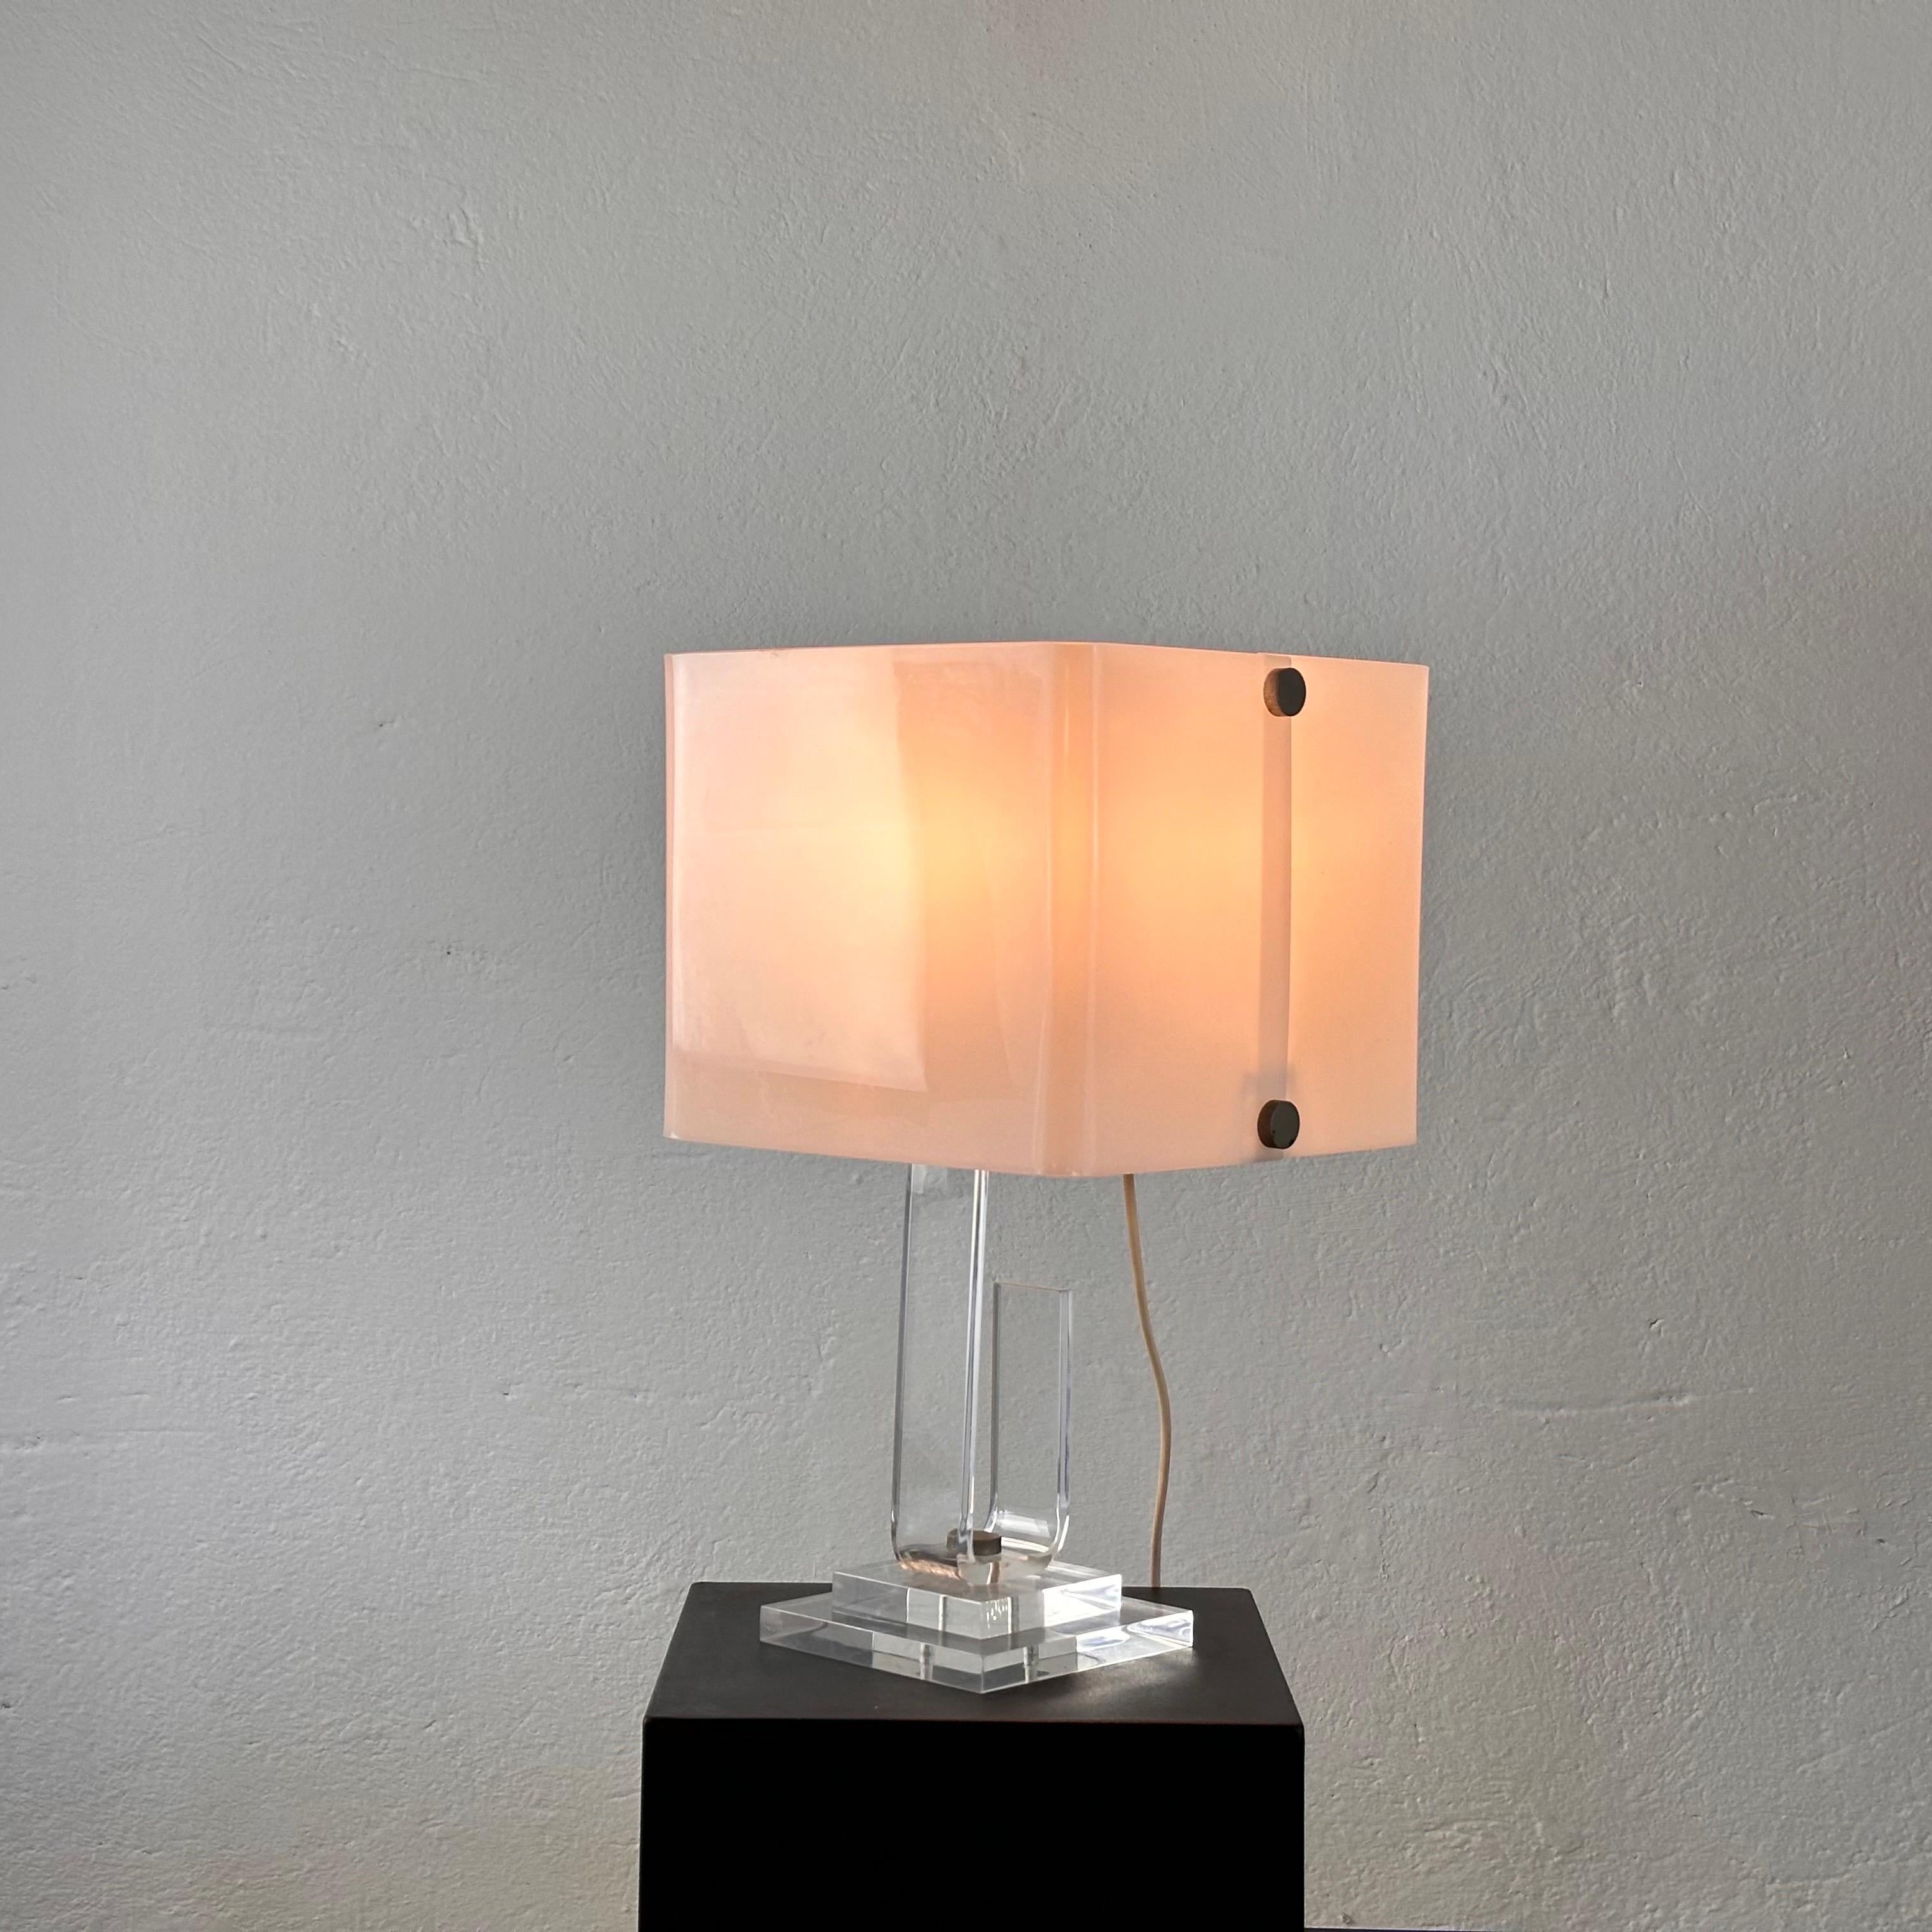 Eleva tu espacio con esta exquisita lámpara de sobremesa de Sandro Petti, un verdadero testimonio de la delicadeza del diseño italiano de los años setenta. Fabricada en plexiglás, esta pieza emana un aura de elegancia atemporal, reflejo de la